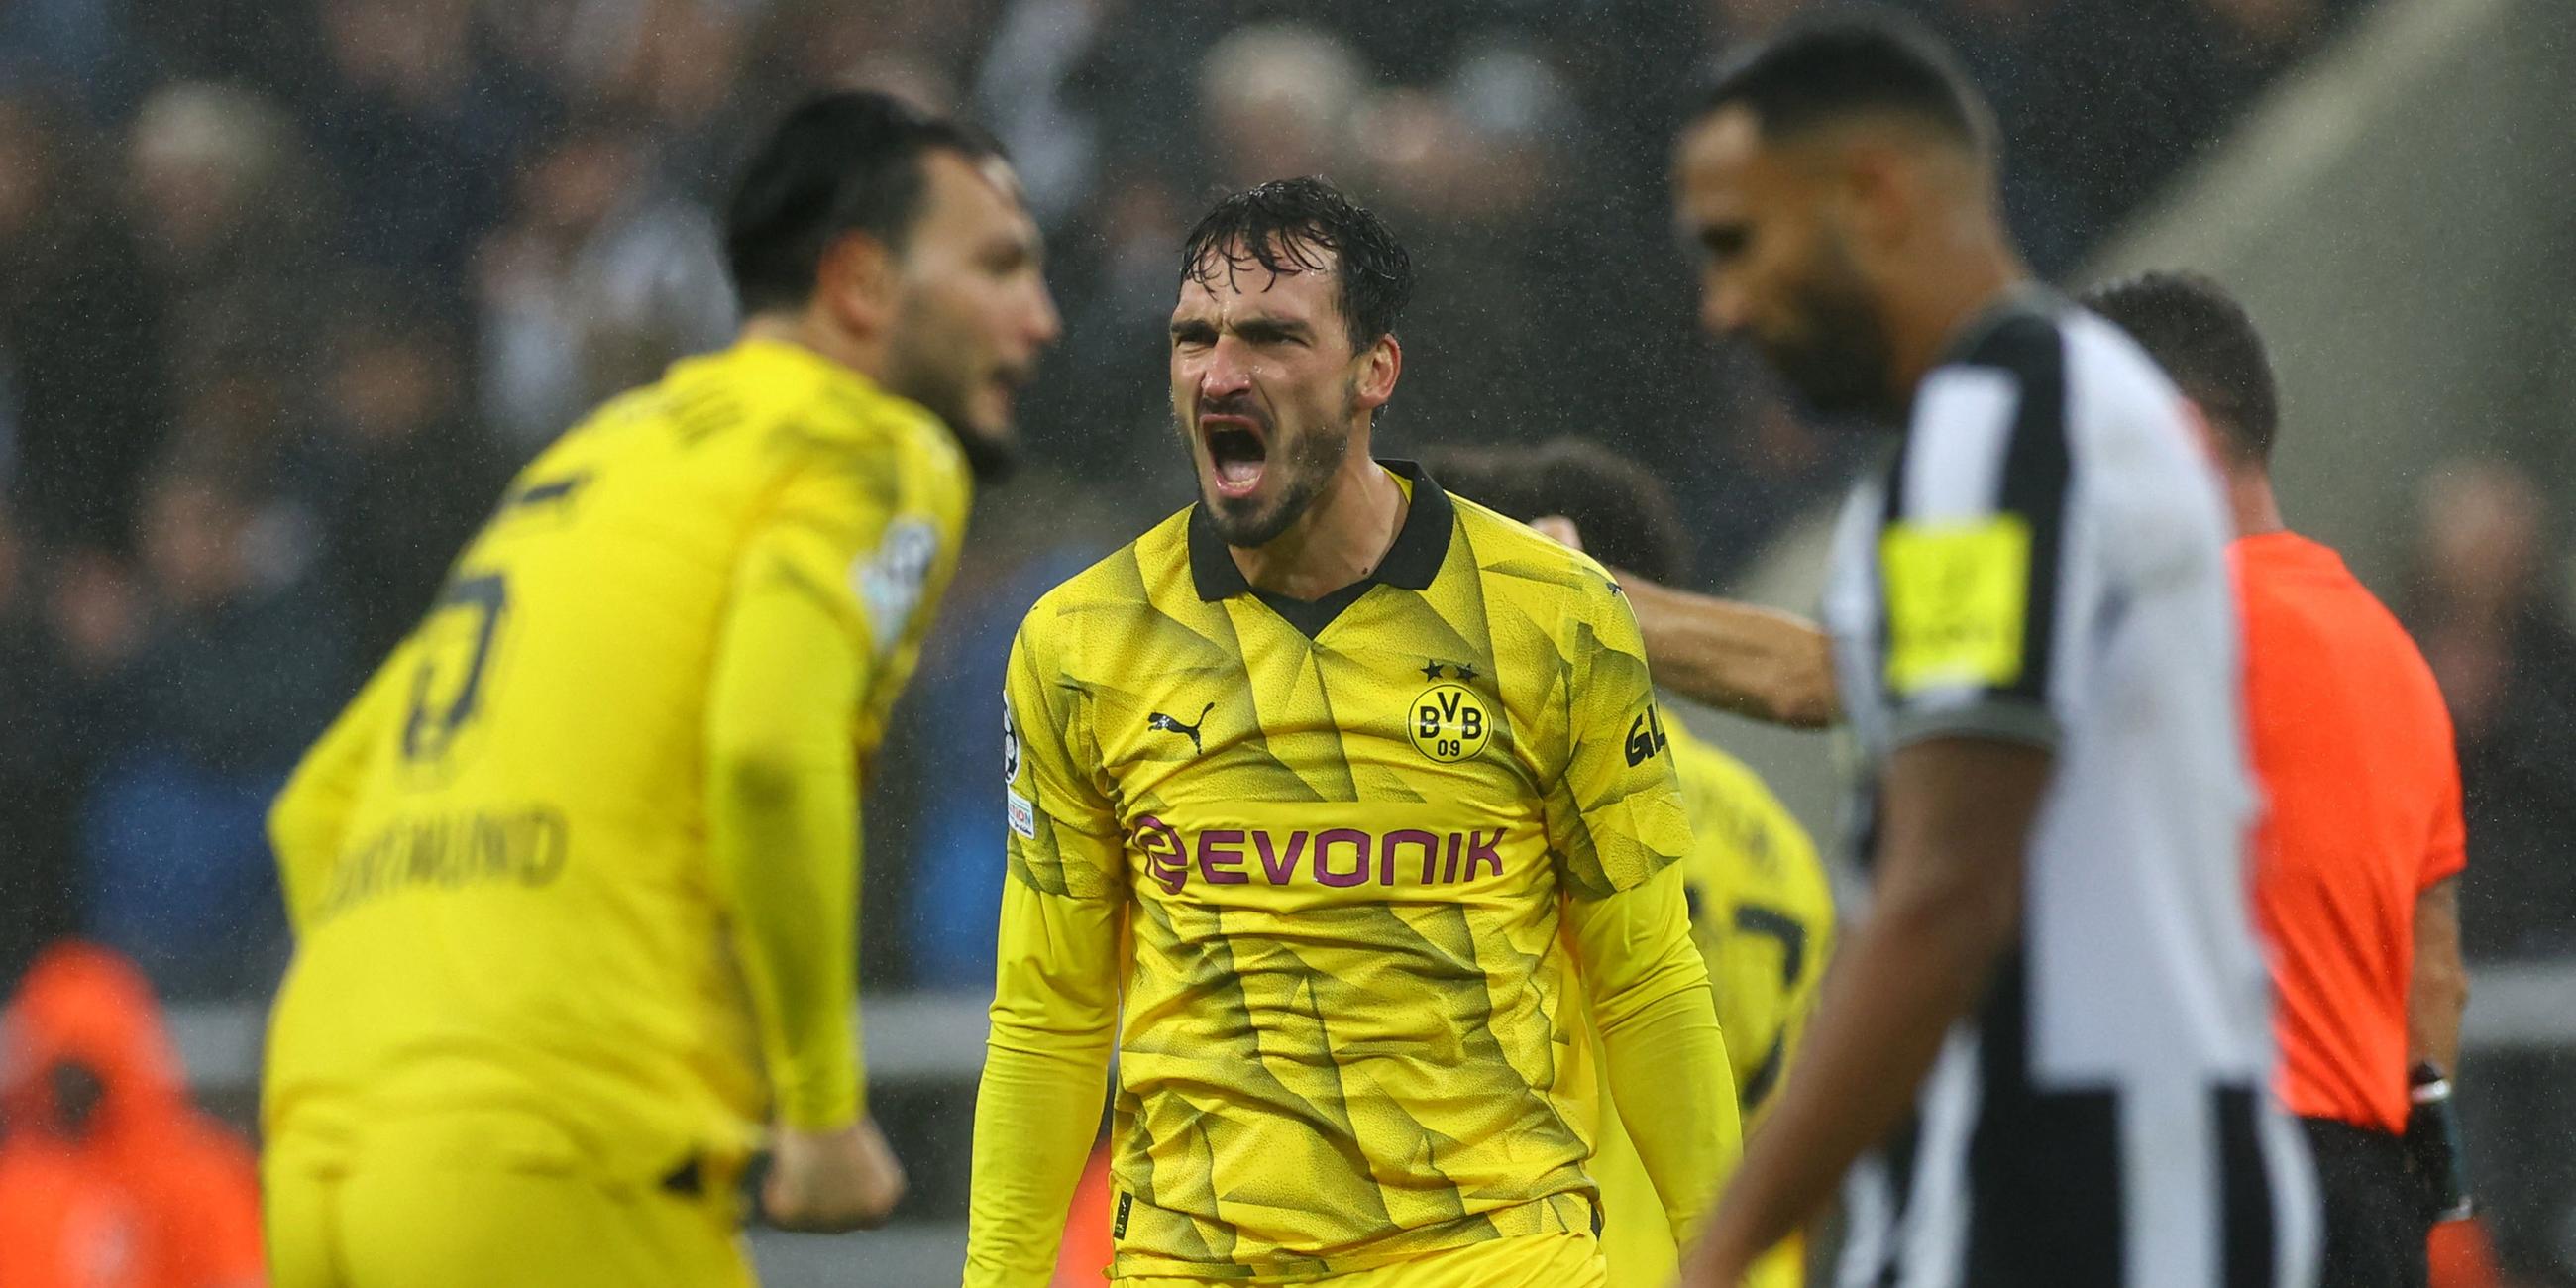 Champions League, Newcastle United - Borussia Dortmund: Mats Hummels schreit seine Freude heraus